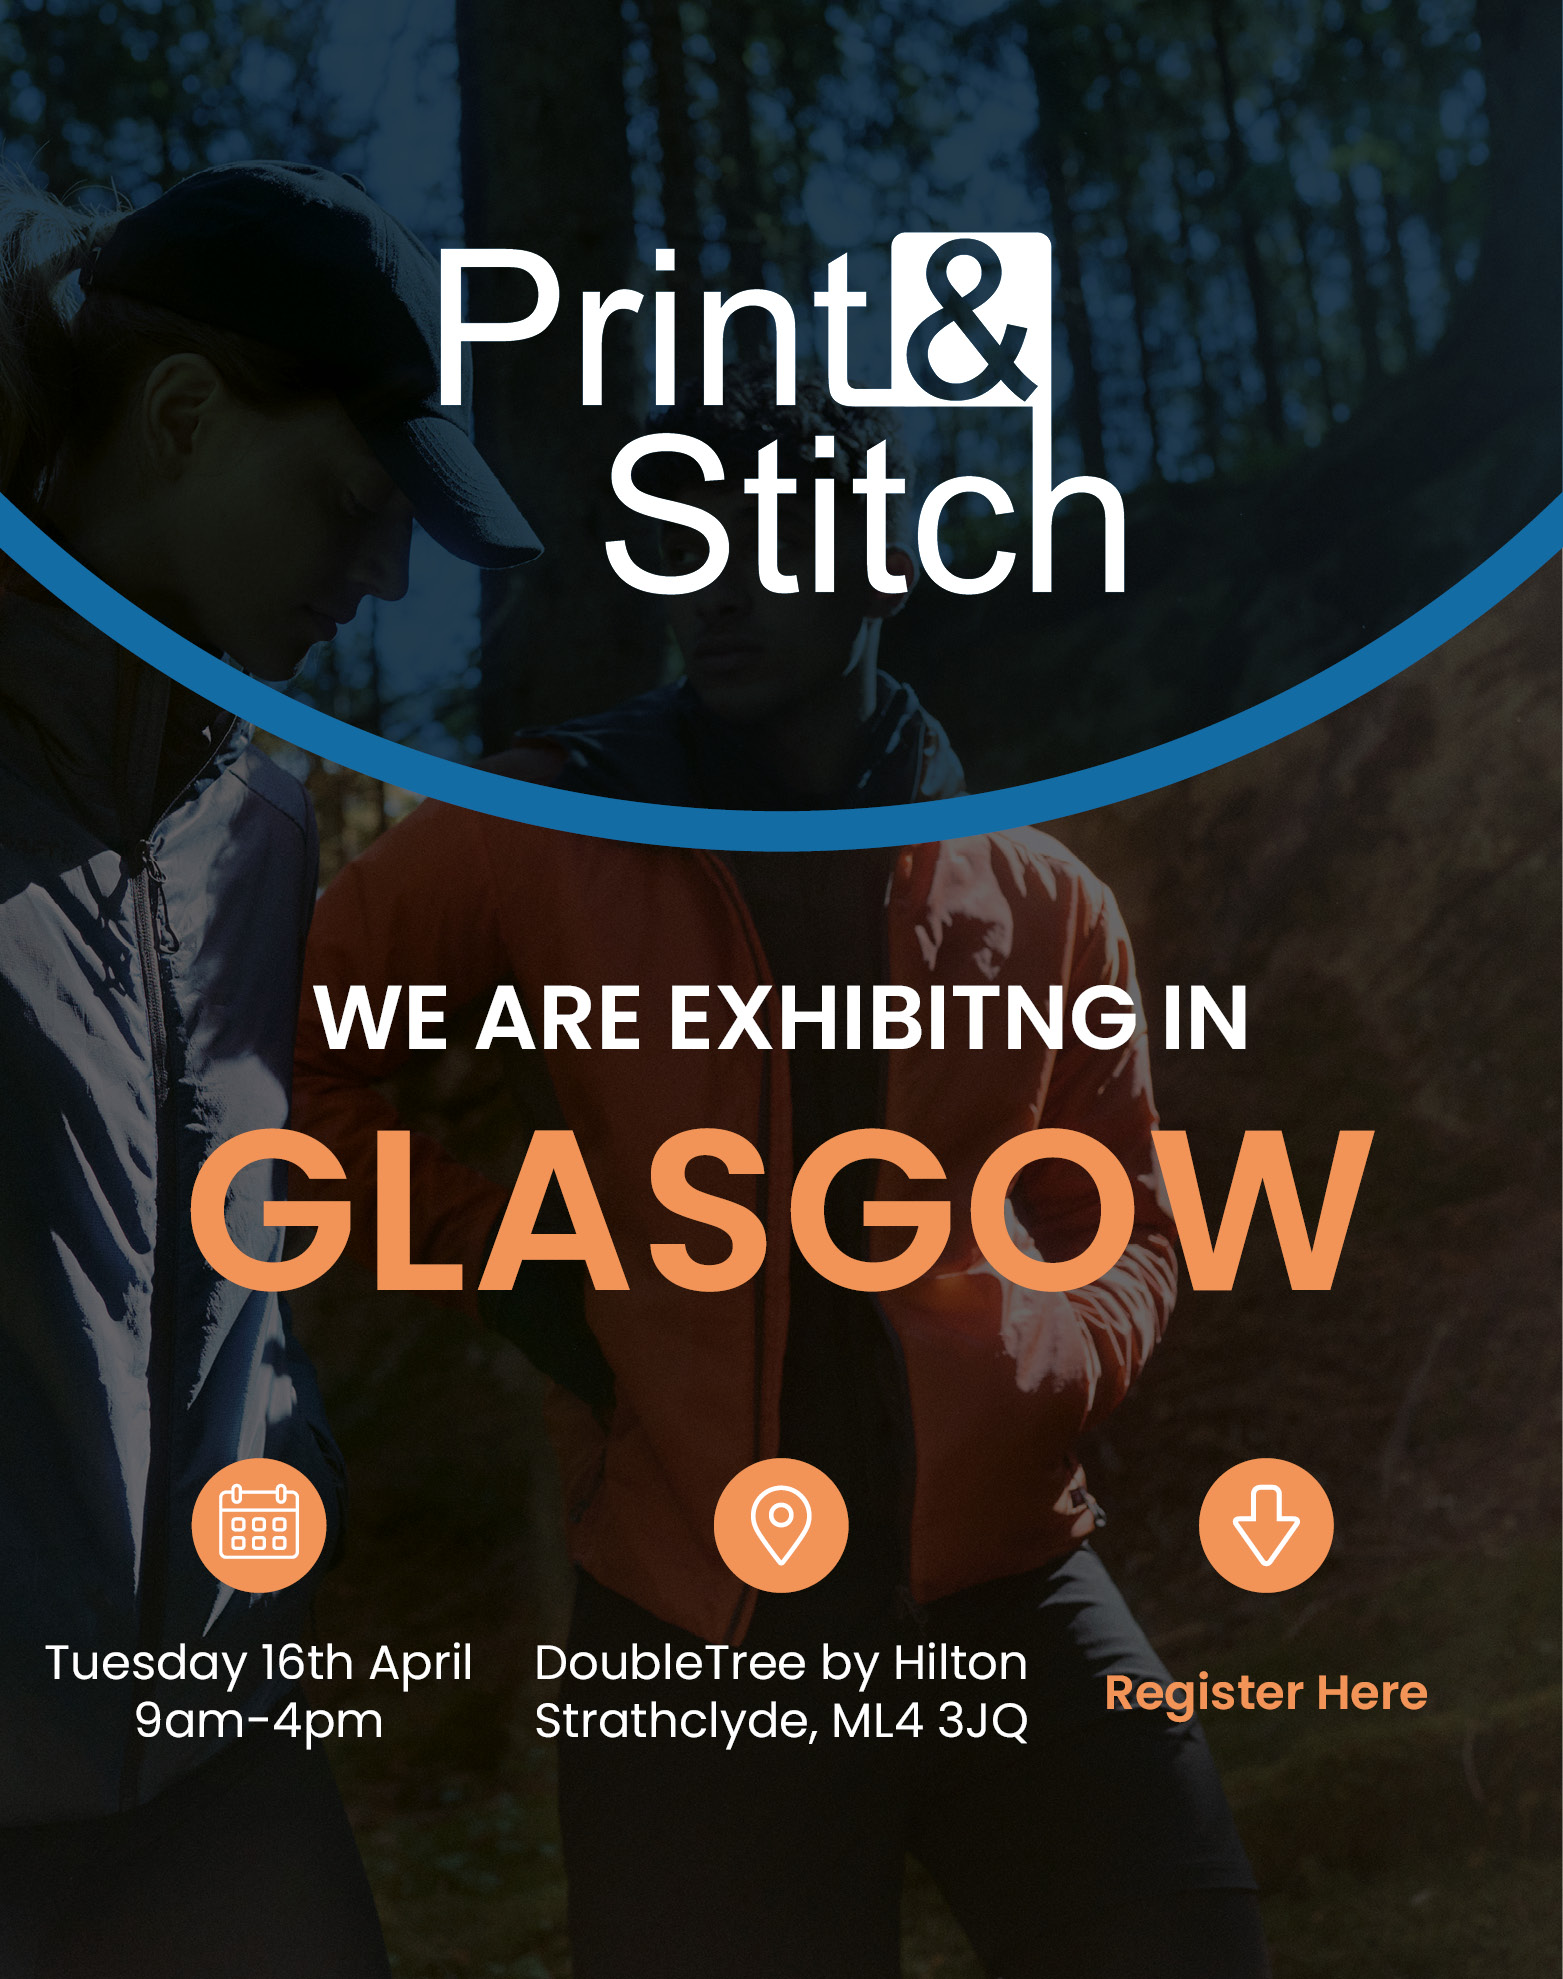 Print & Stitch Glasgow Tradeshow